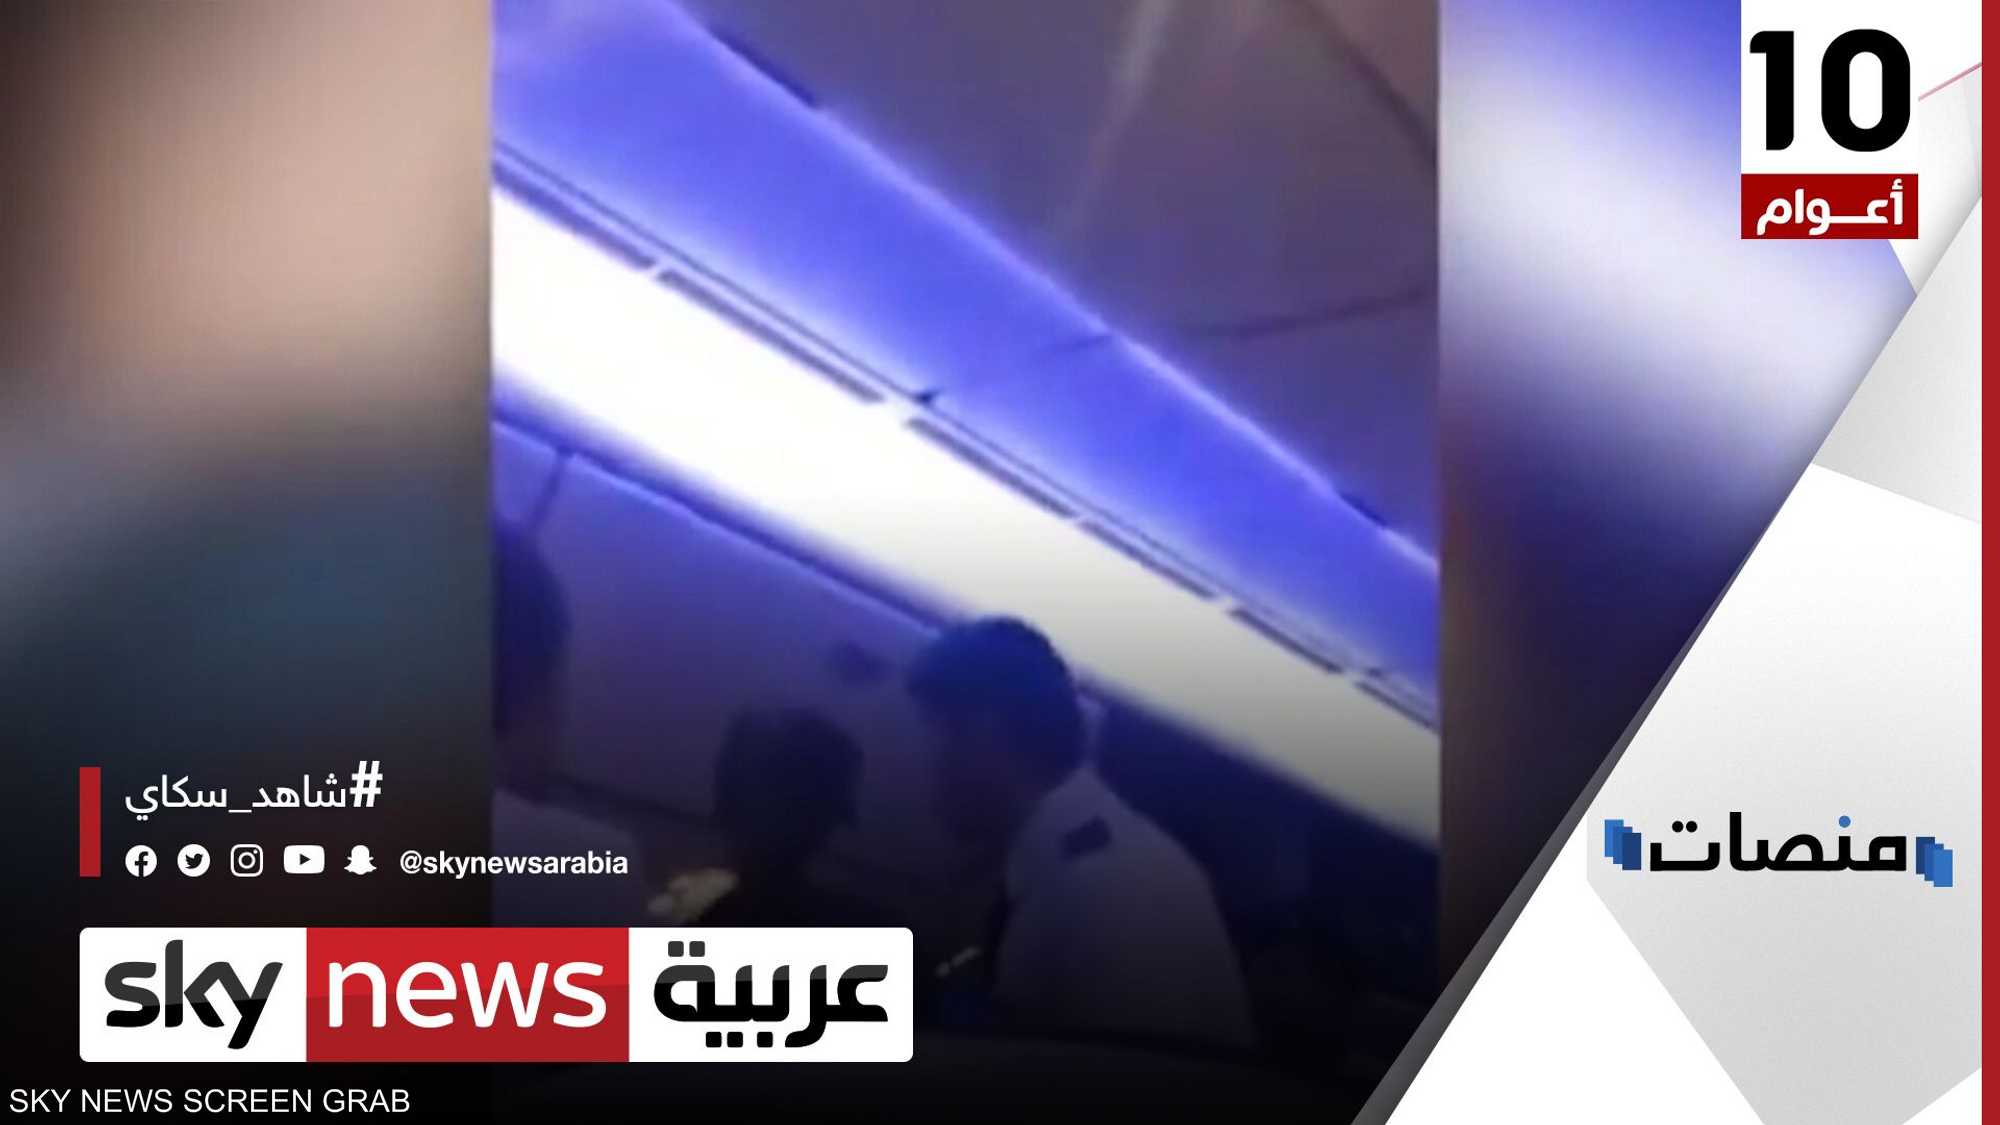 طفل "متسول" يخترق أمن مطار عراقي ويعطل رحلة لساعتين